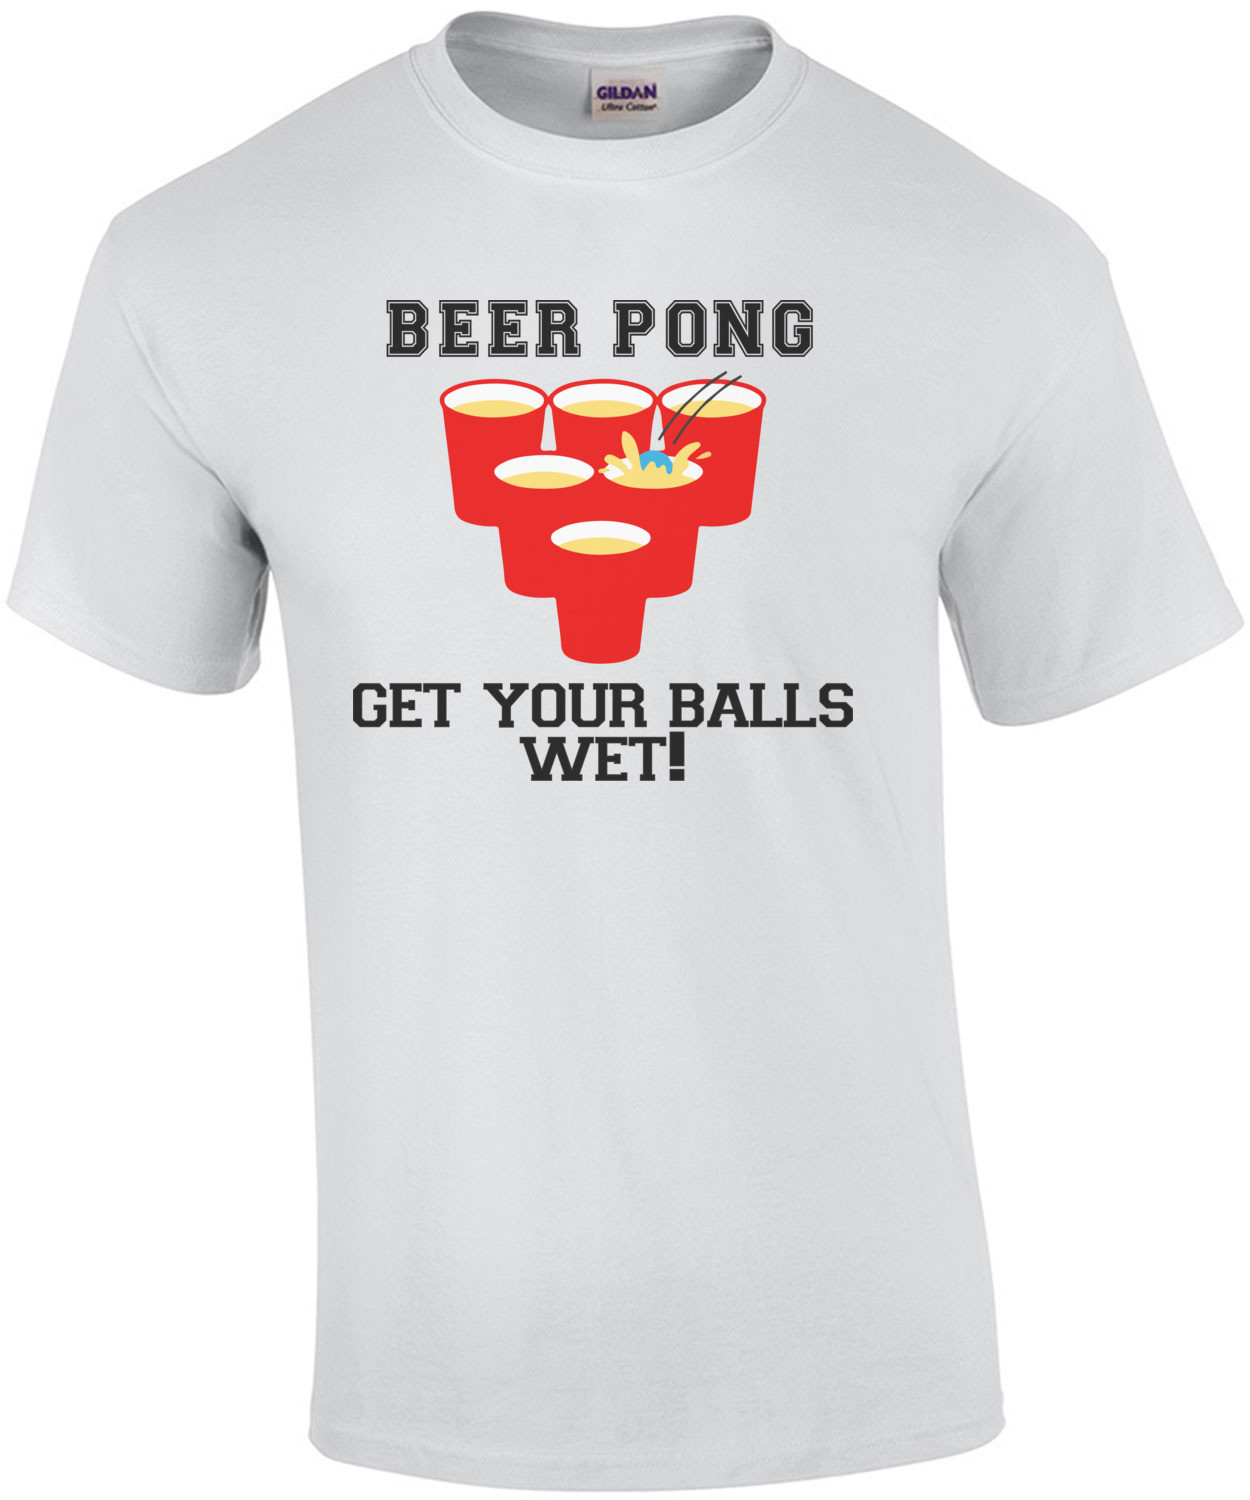 Beer Pong - Get your balls wet